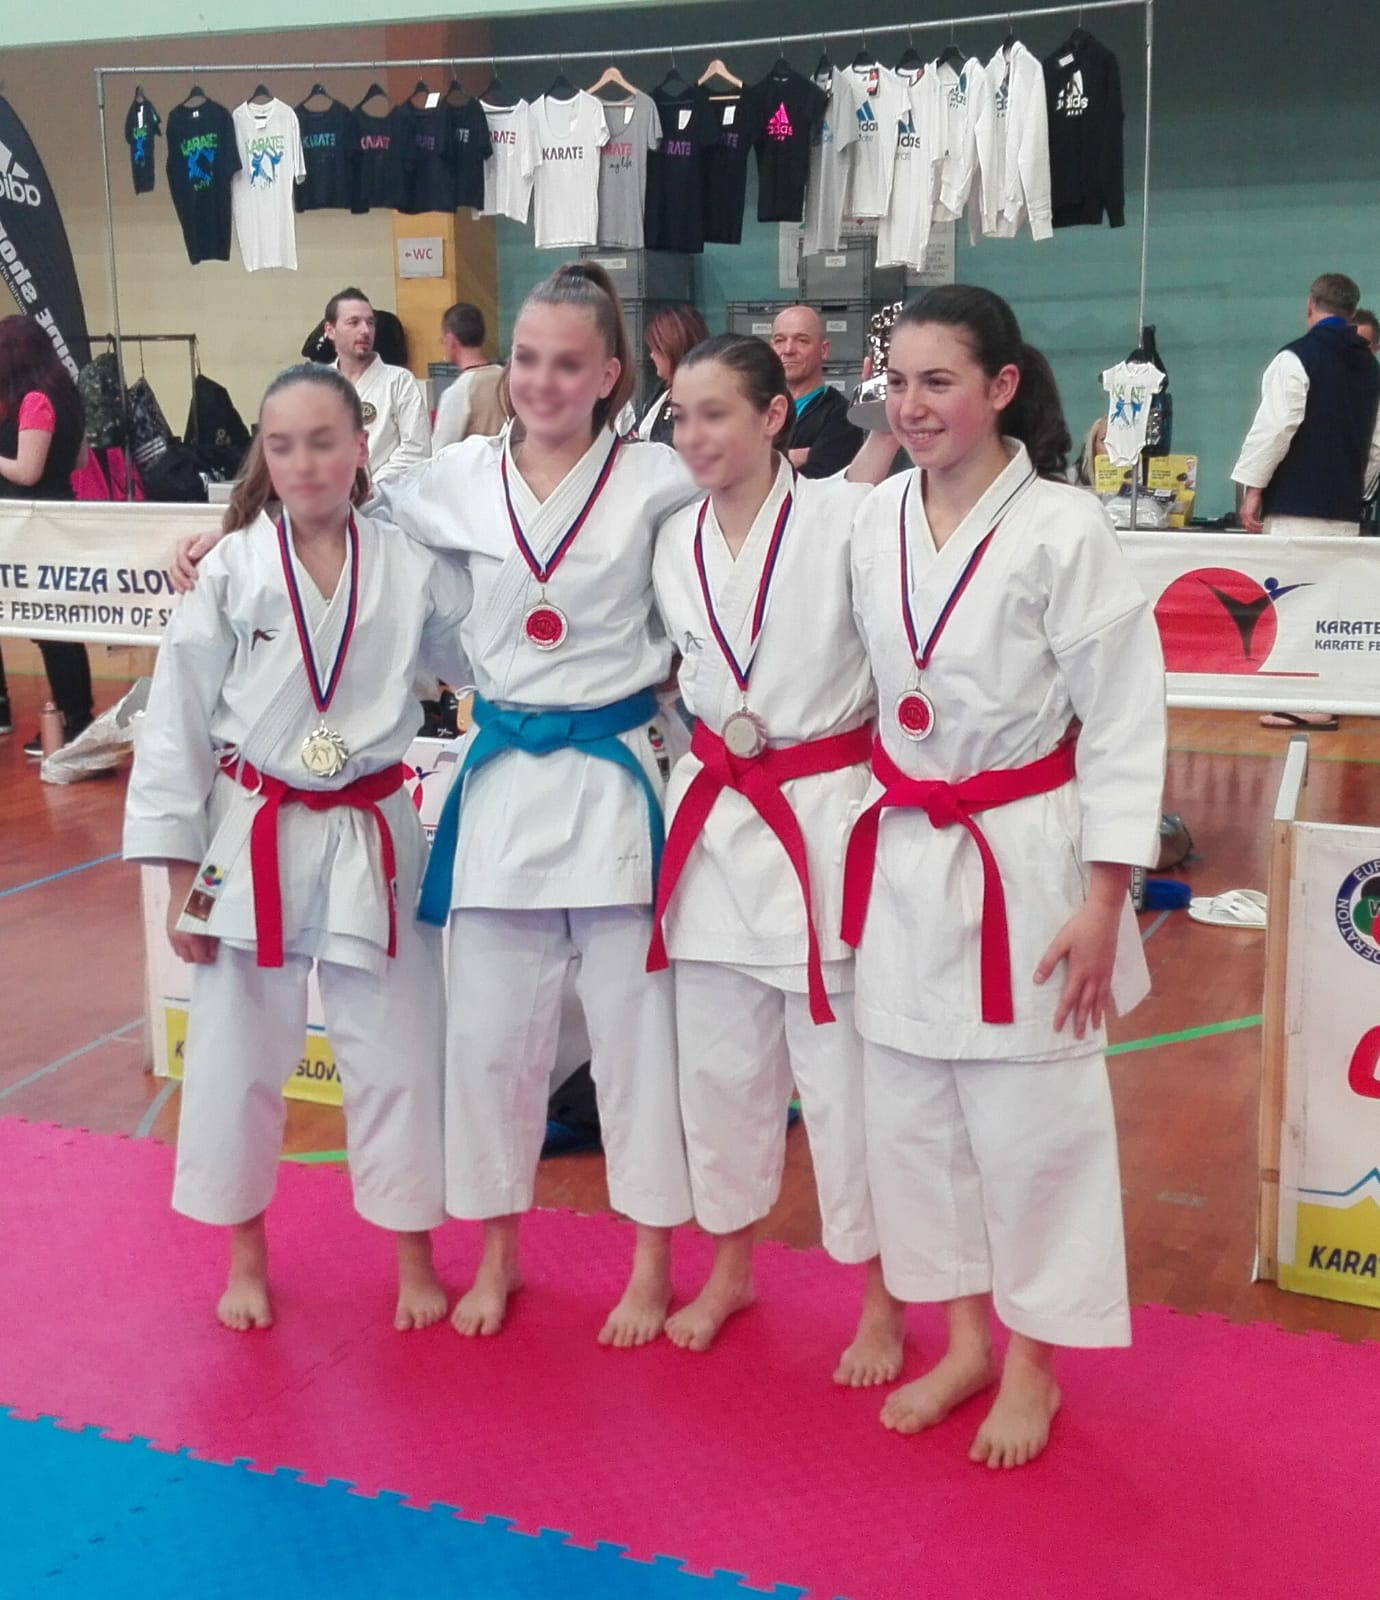 Scopri di più sull'articolo Formazione Sporting Club Latisana: un bronzo all’International karate di Postojna con Maila Casasola